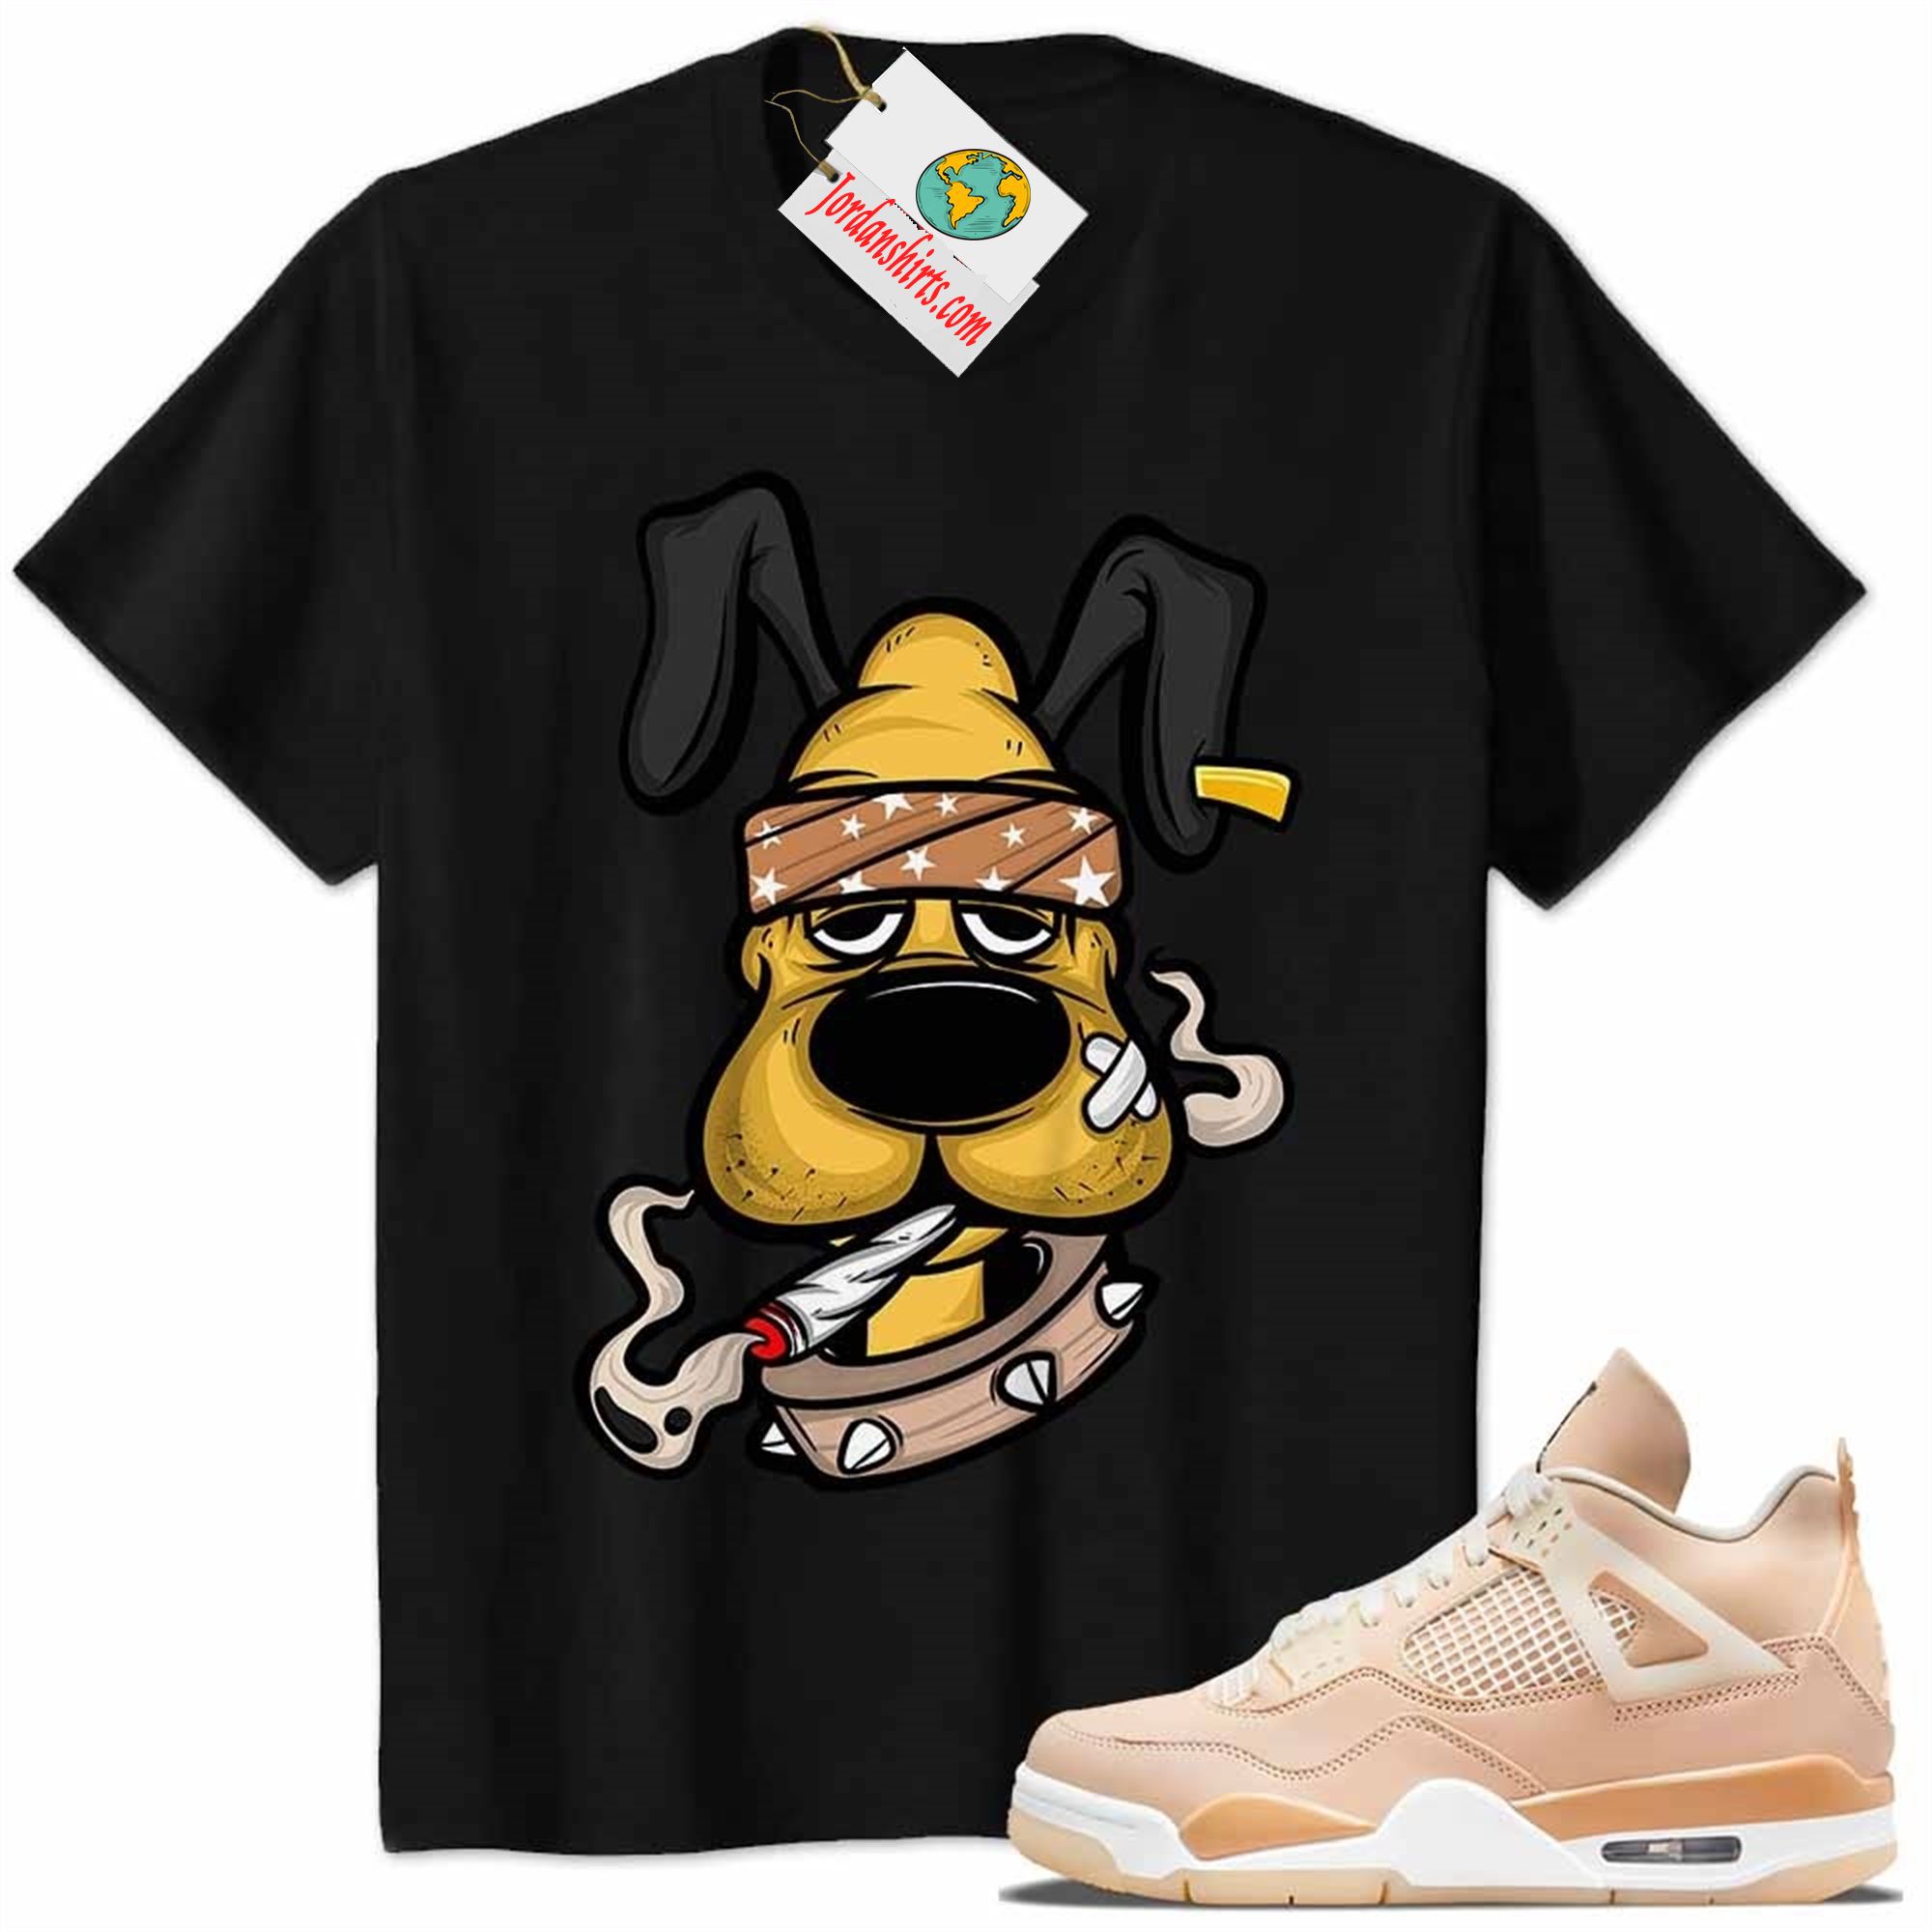 Jordan 4 Shirt, Gangster Pluto Smoke Weed Black Air Jordan 4 Shimmer 4s Plus Size Up To 5xl